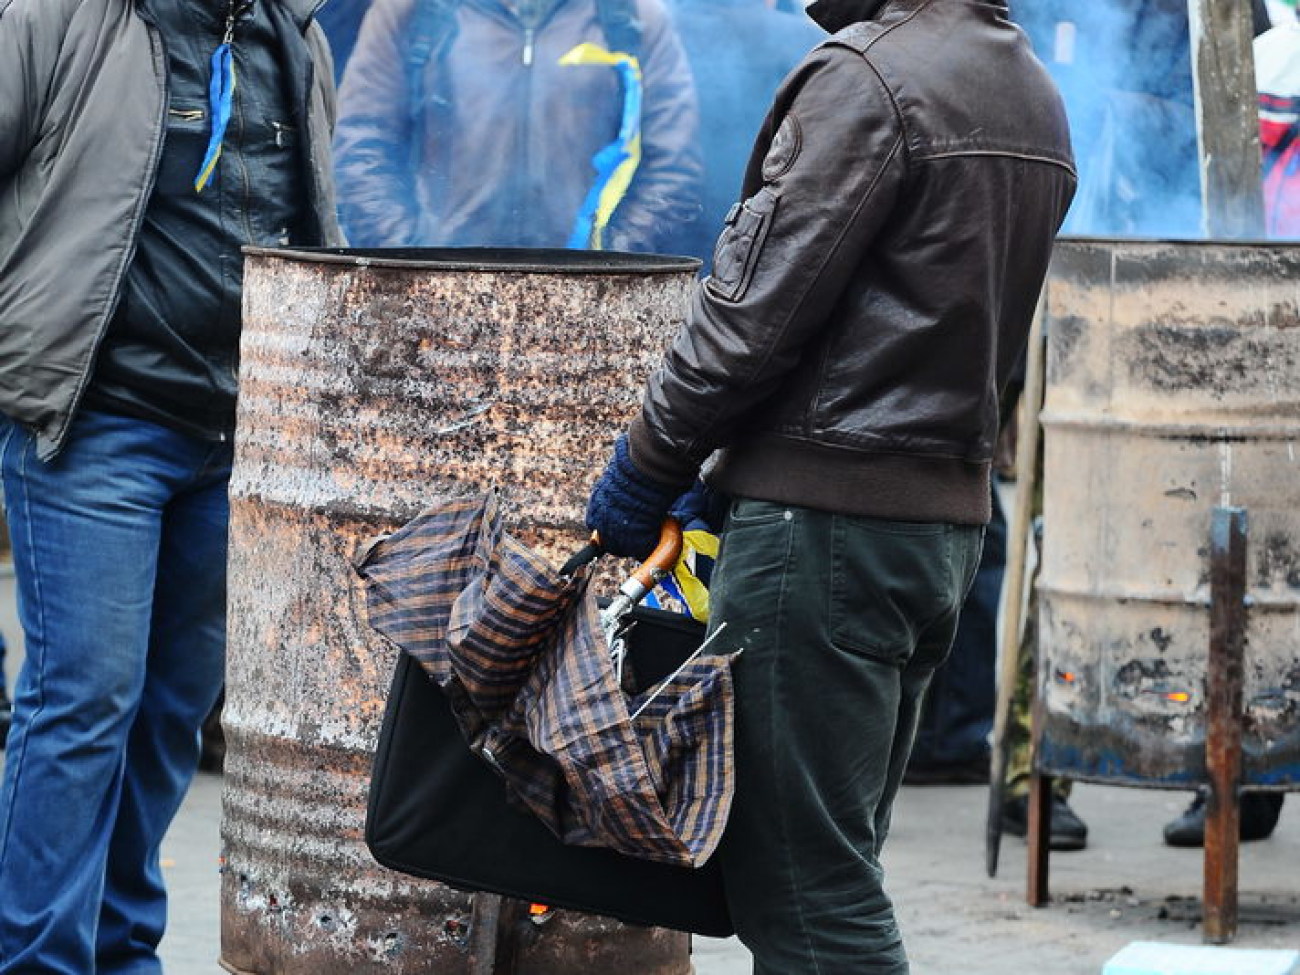 Евромайдан и быт: буржуйки, одеяла и бутерброды с салом, 26 ноября 2013г.